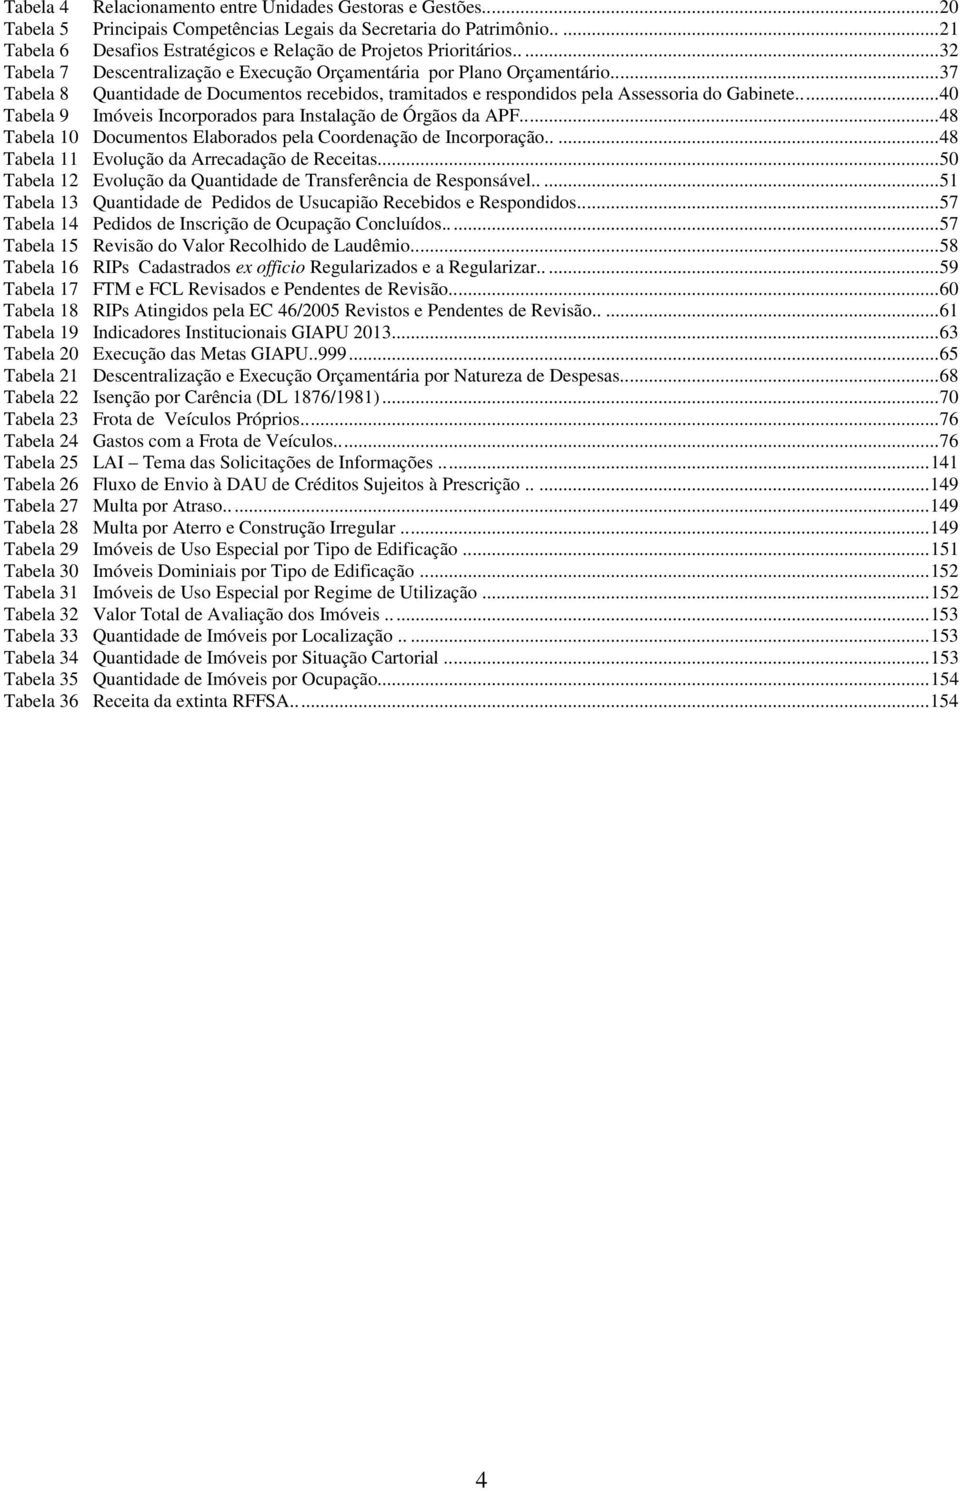 ..40 Tabela 9 Imóveis Incorporados para Instalação de Órgãos da APF...48 Tabela 10 Documentos Elaborados pela Coordenação de Incorporação.....48 Tabela 11 Evolução da Arrecadação de Receitas.